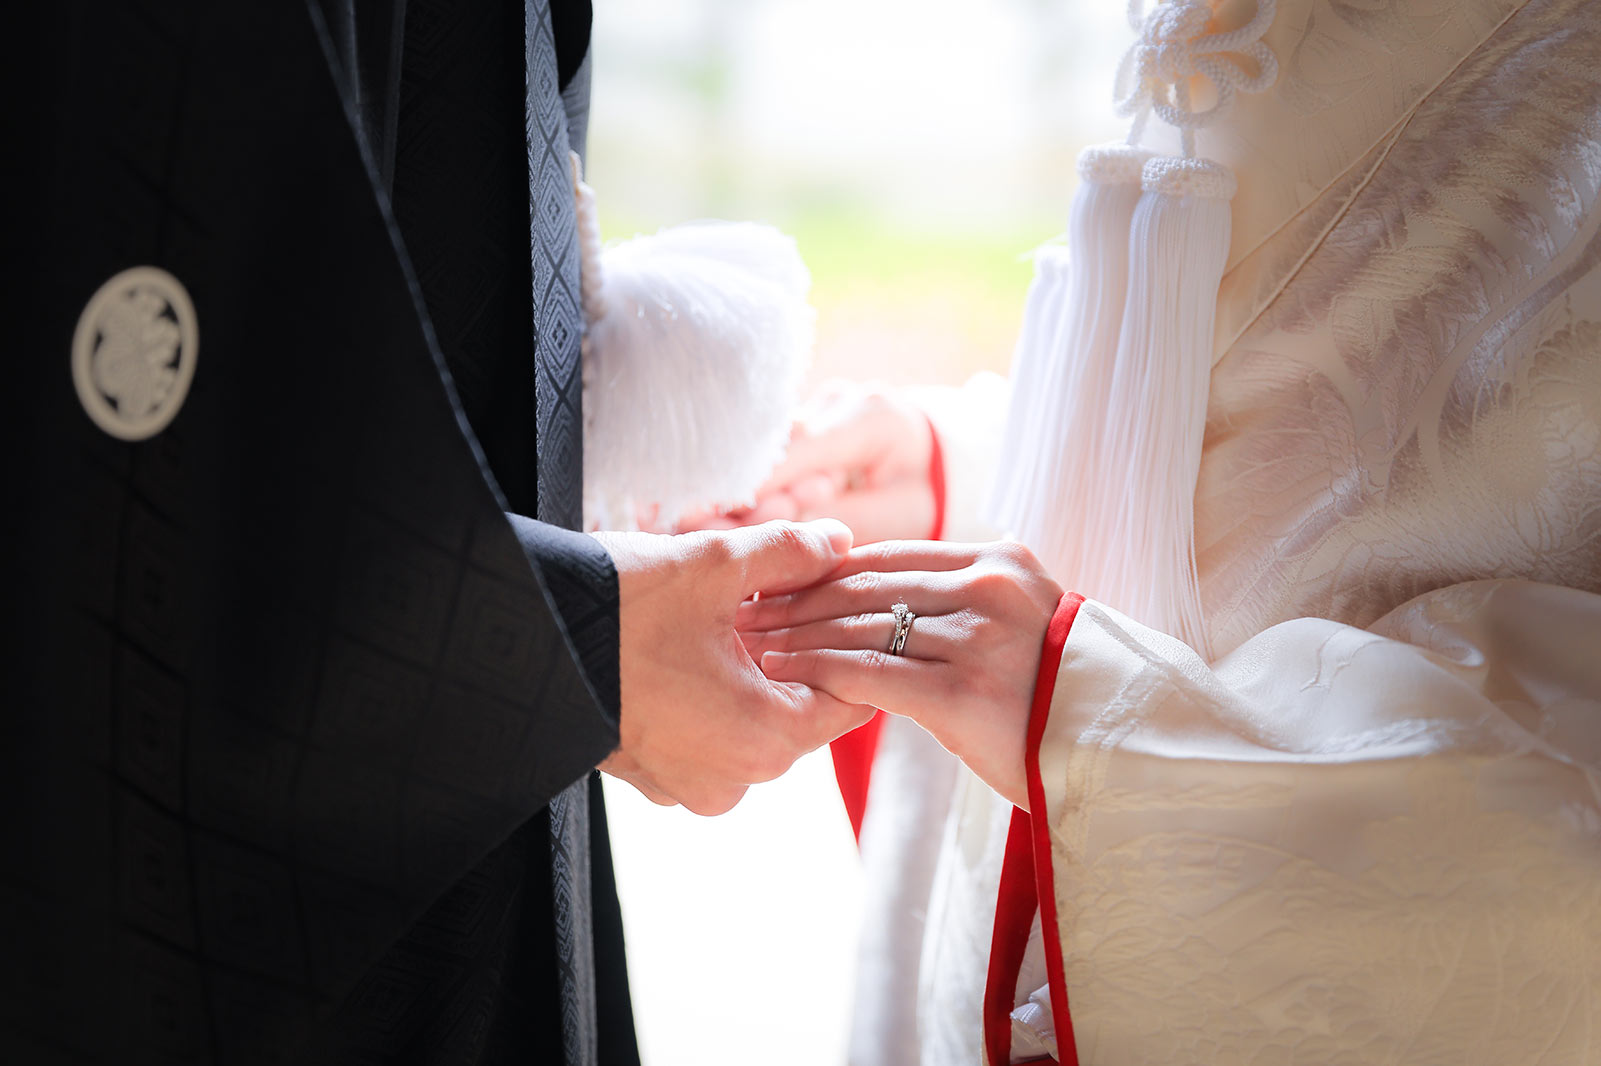 白無垢の婚約指輪のイメージカット